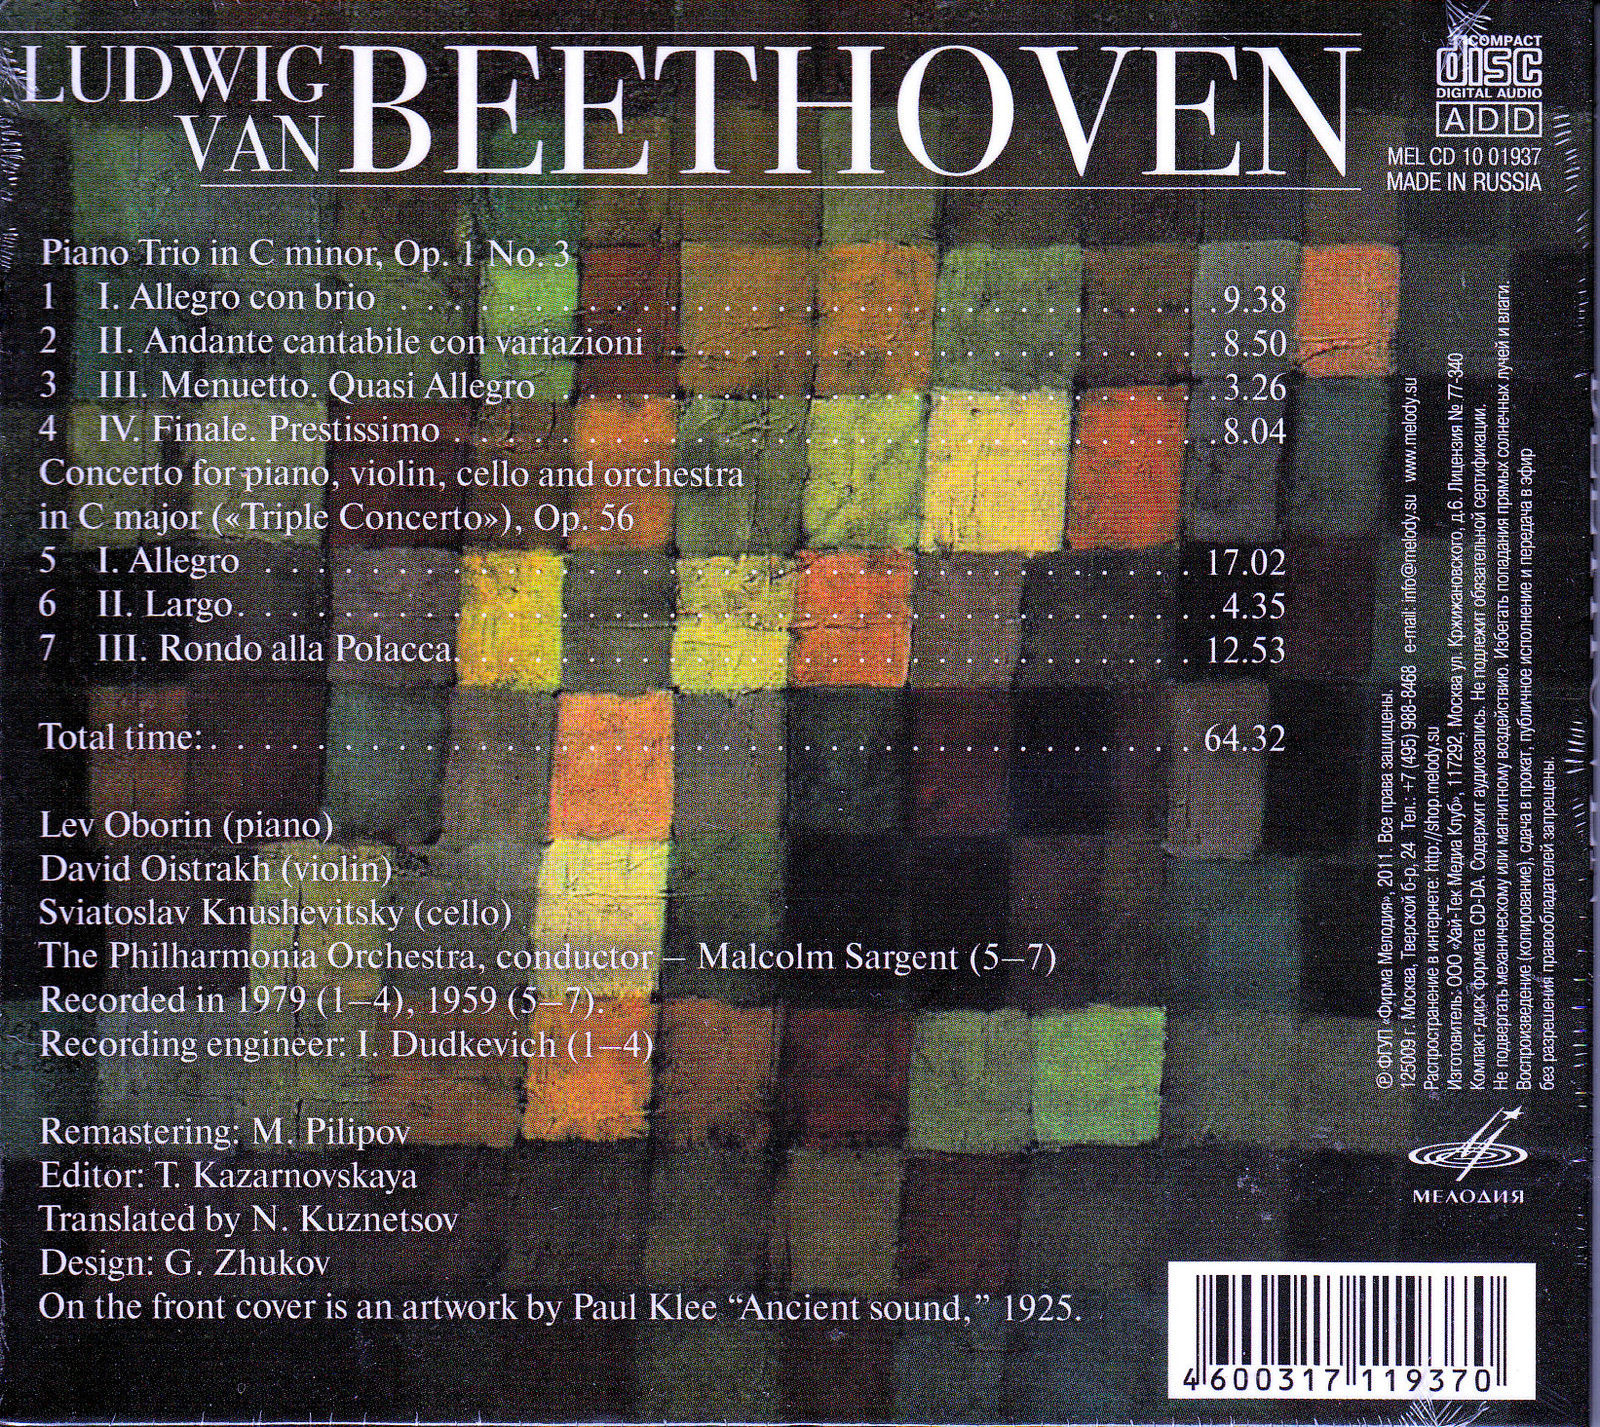 Бетховен: Тройной концерт, соч. 56 и Фортепианное трио до минор, соч. 1 No. 3